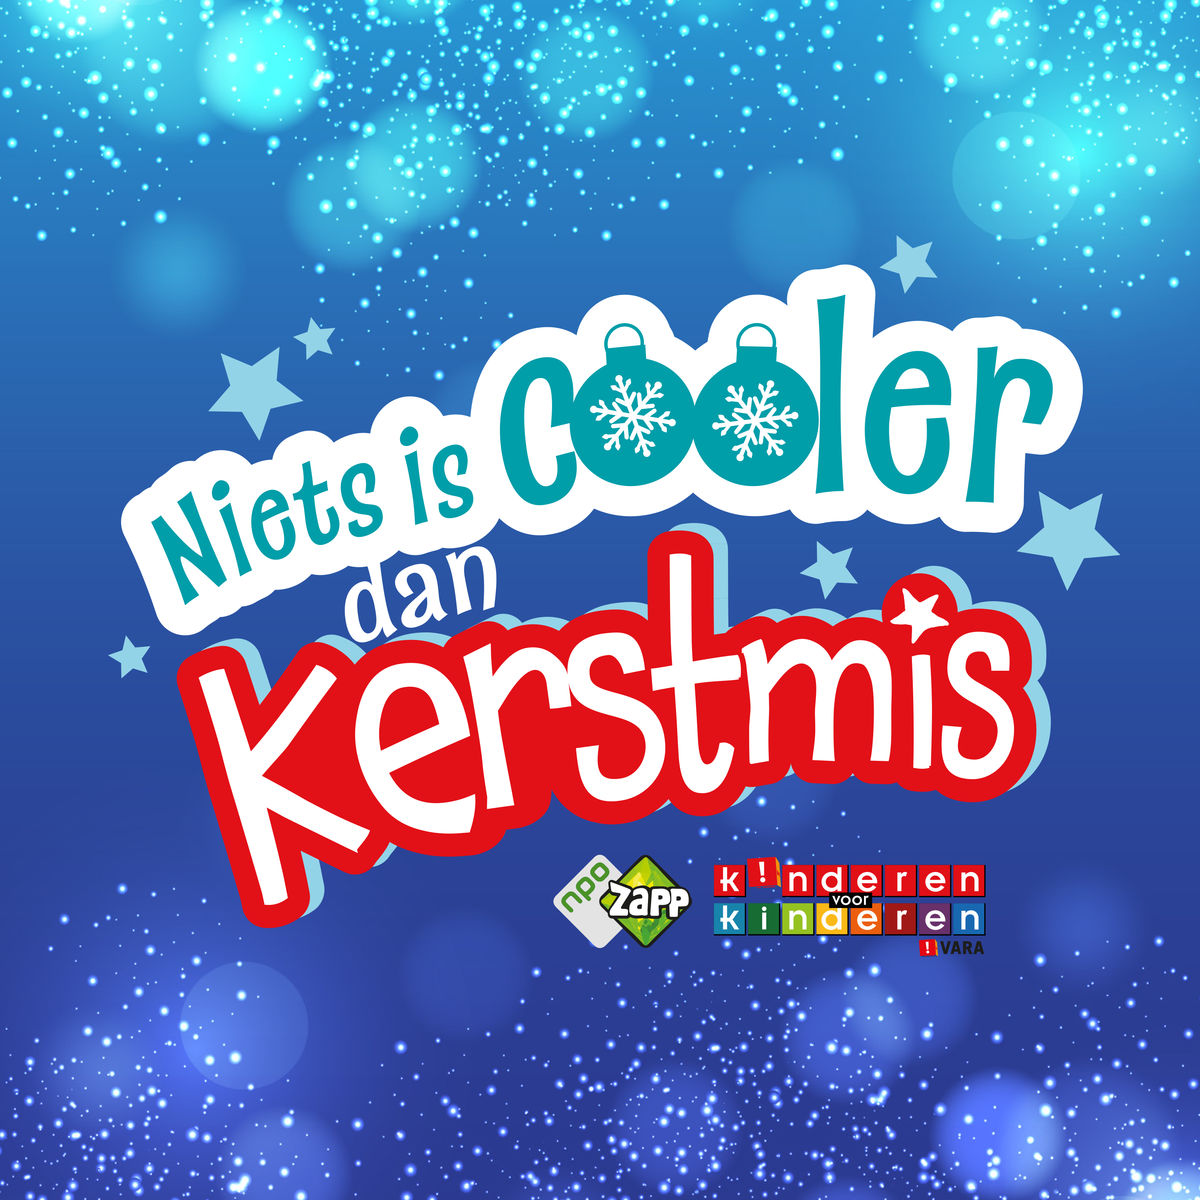 lening Grommen Kwijting Kinderen Voor Kinderen - Niets is cooler dan kerstmis - dutchcharts.nl